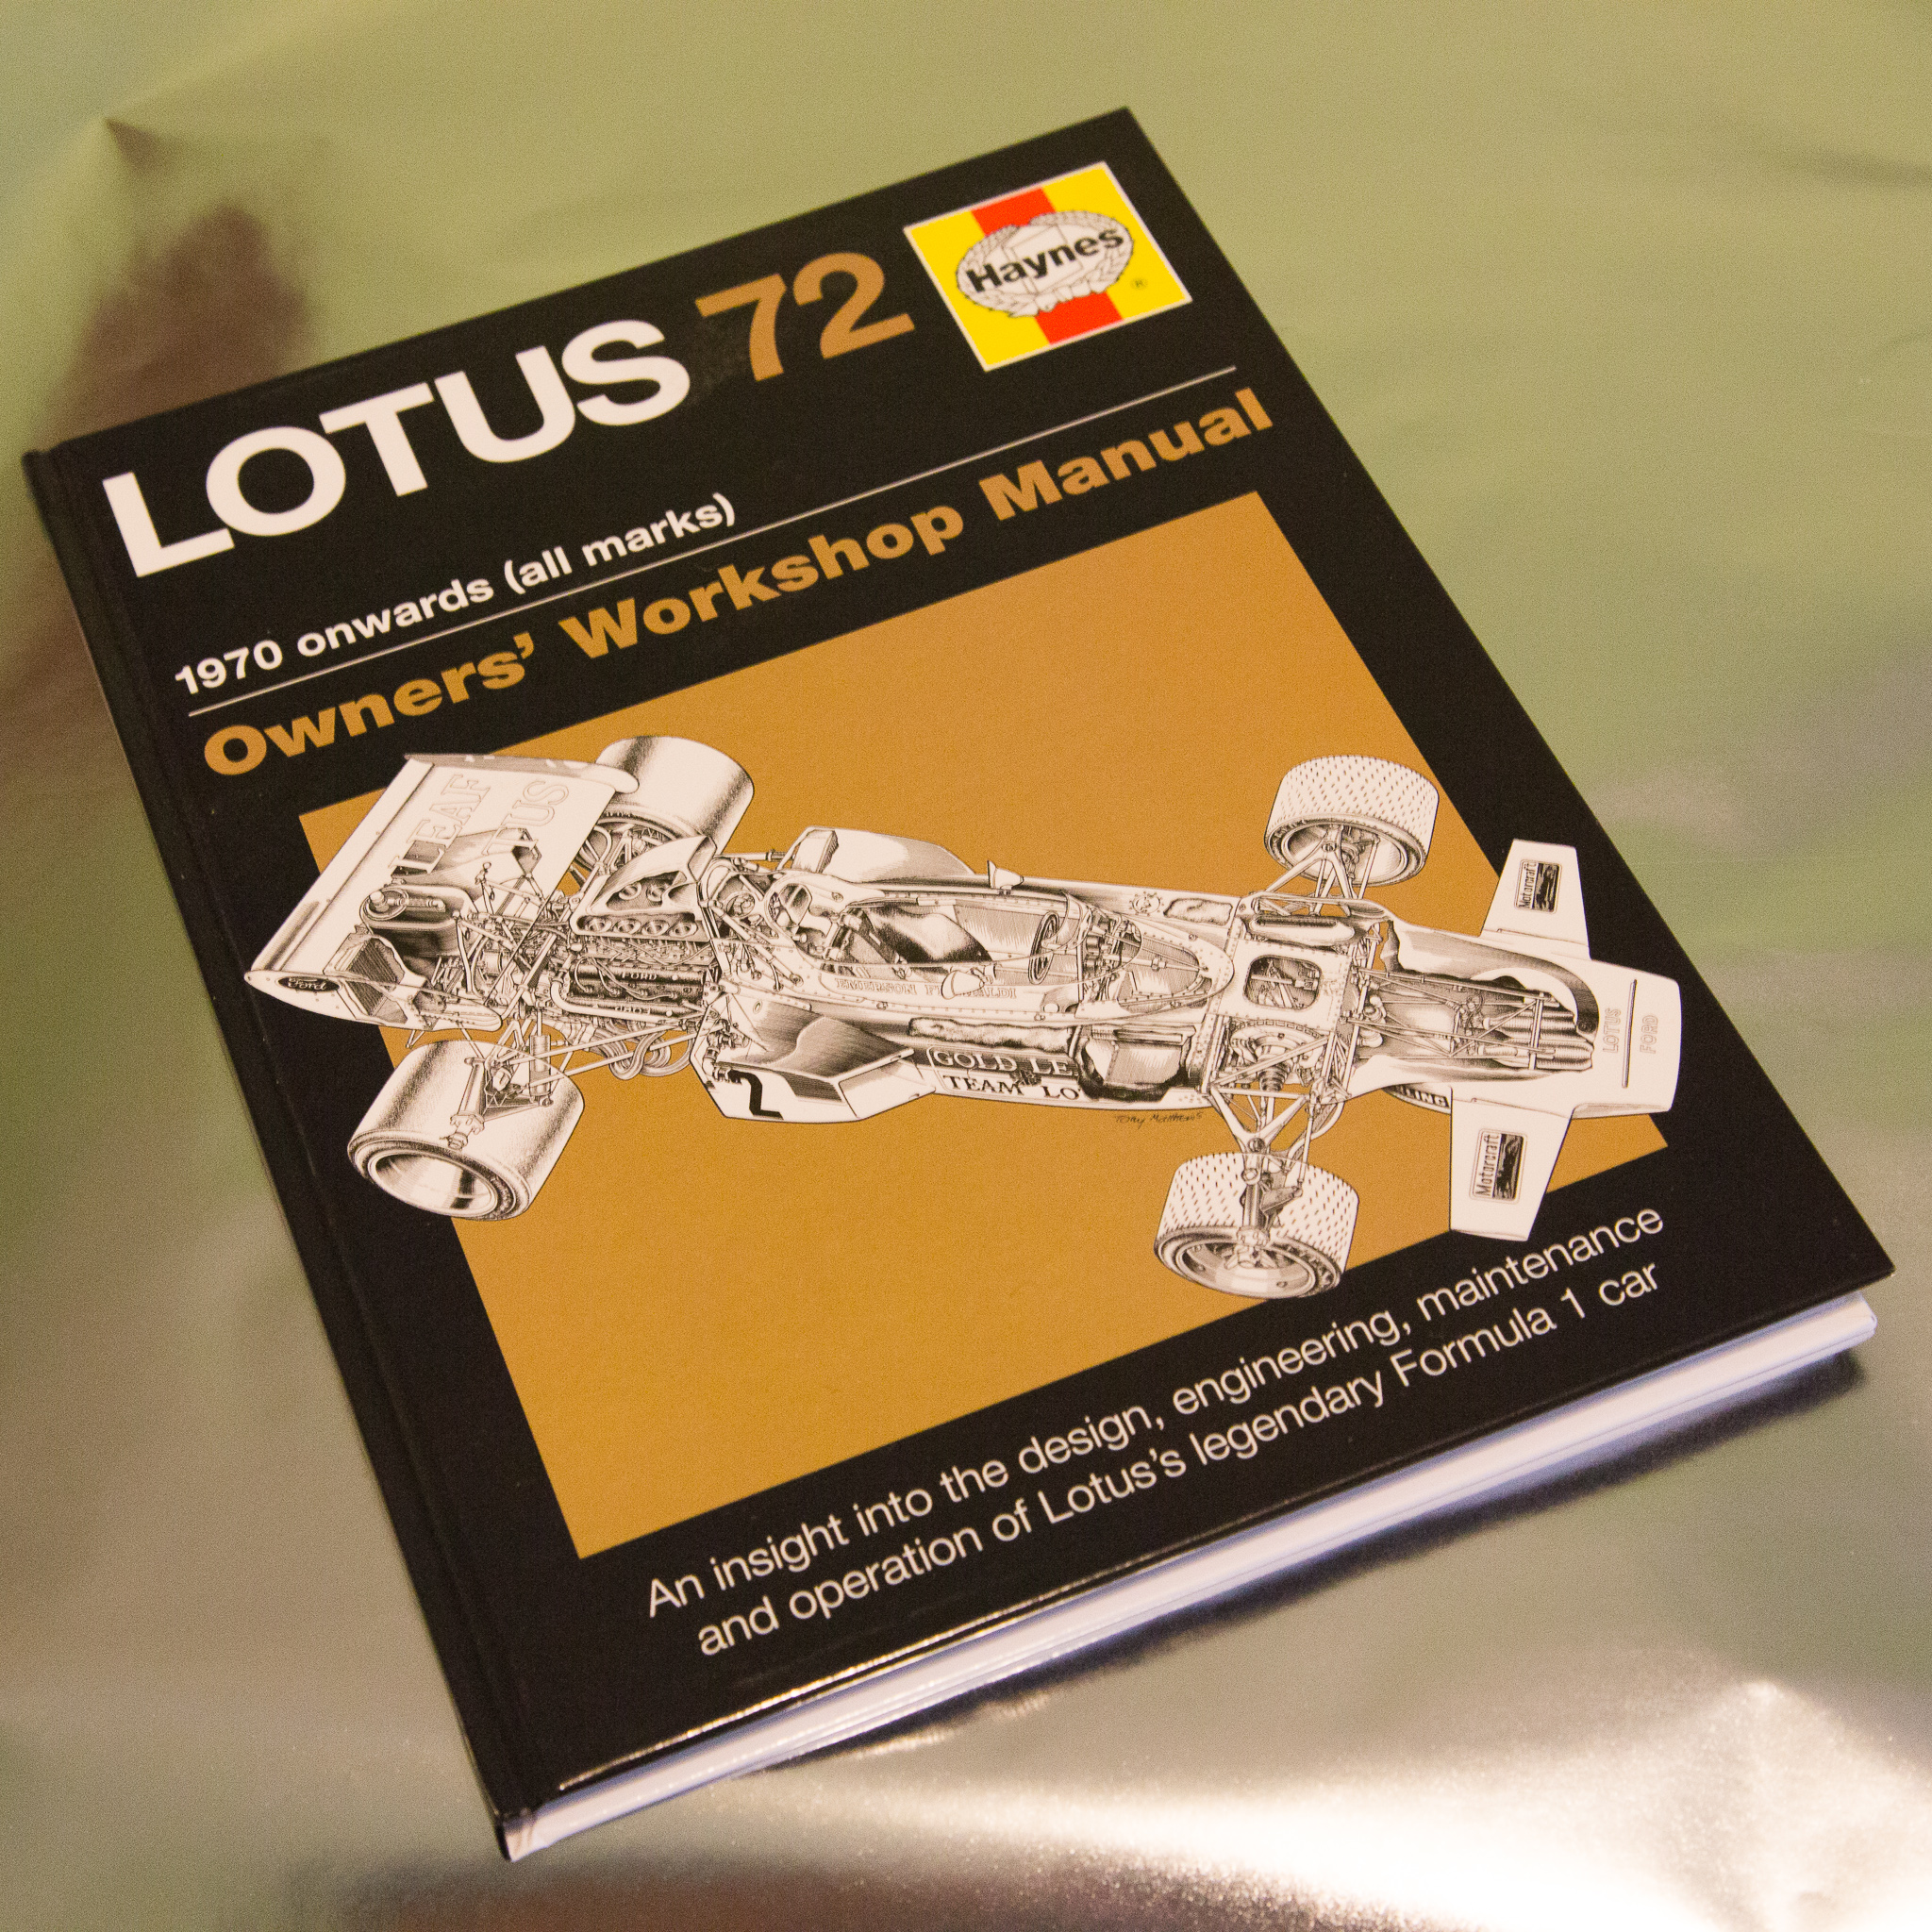 Locus manual 2012